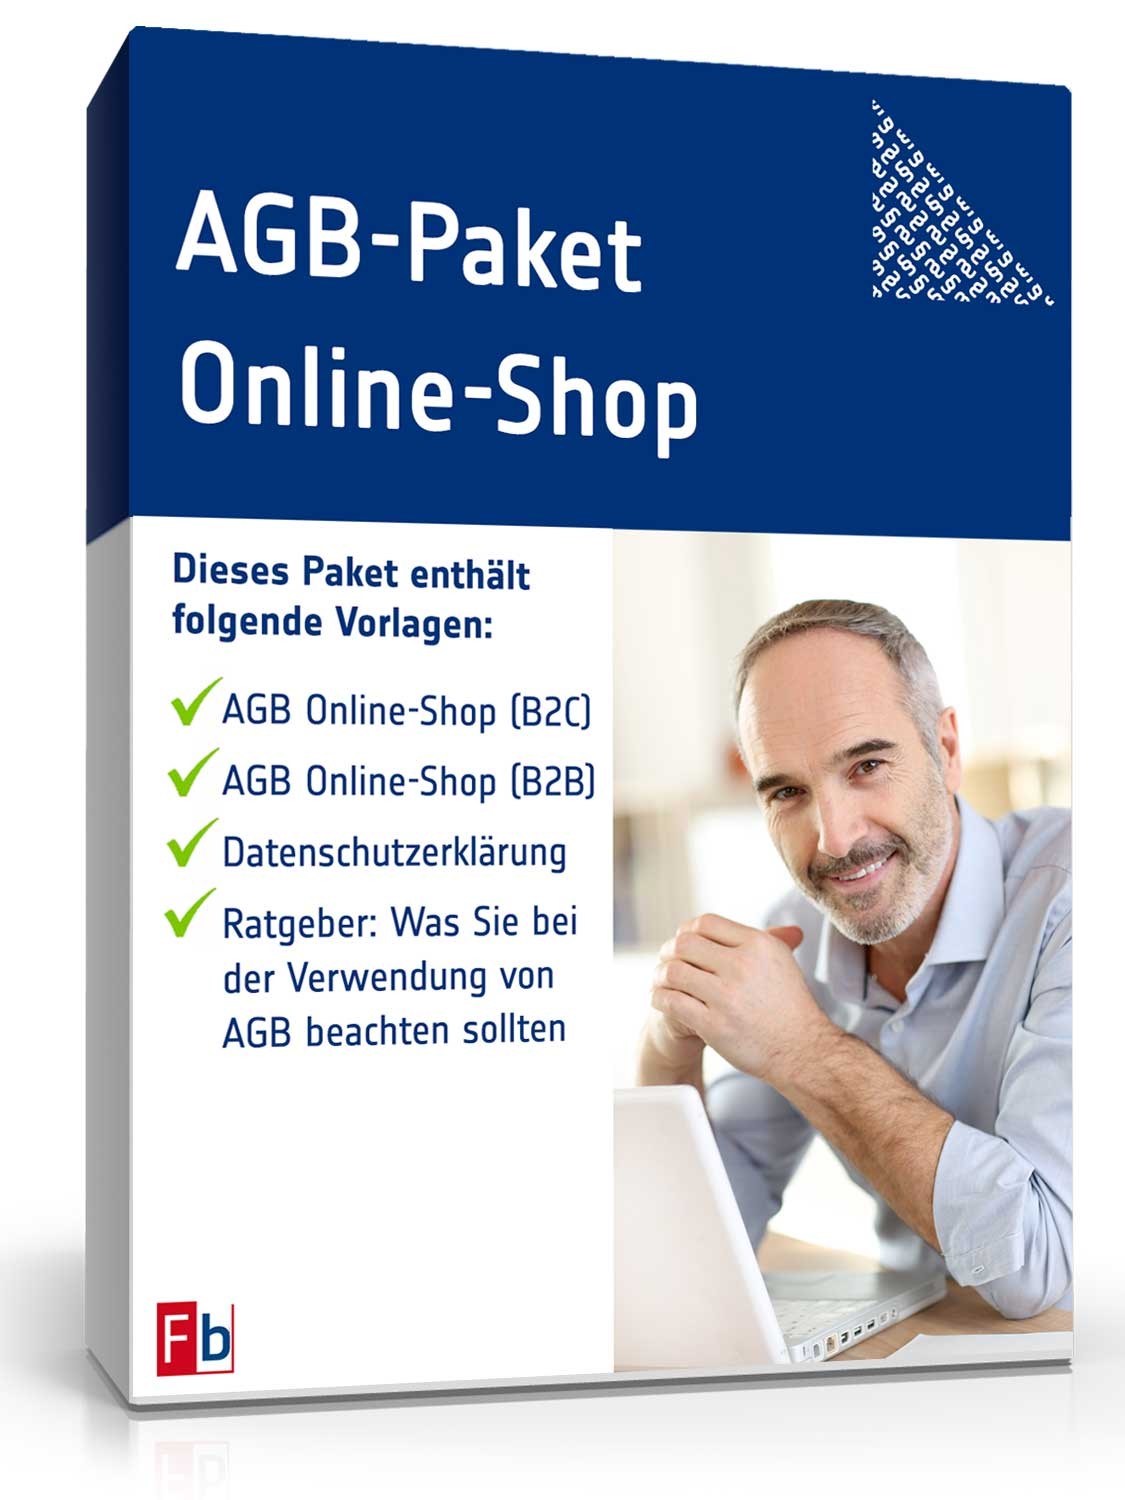 Hauptbild des Produkts: AGB-Paket Online-Shop